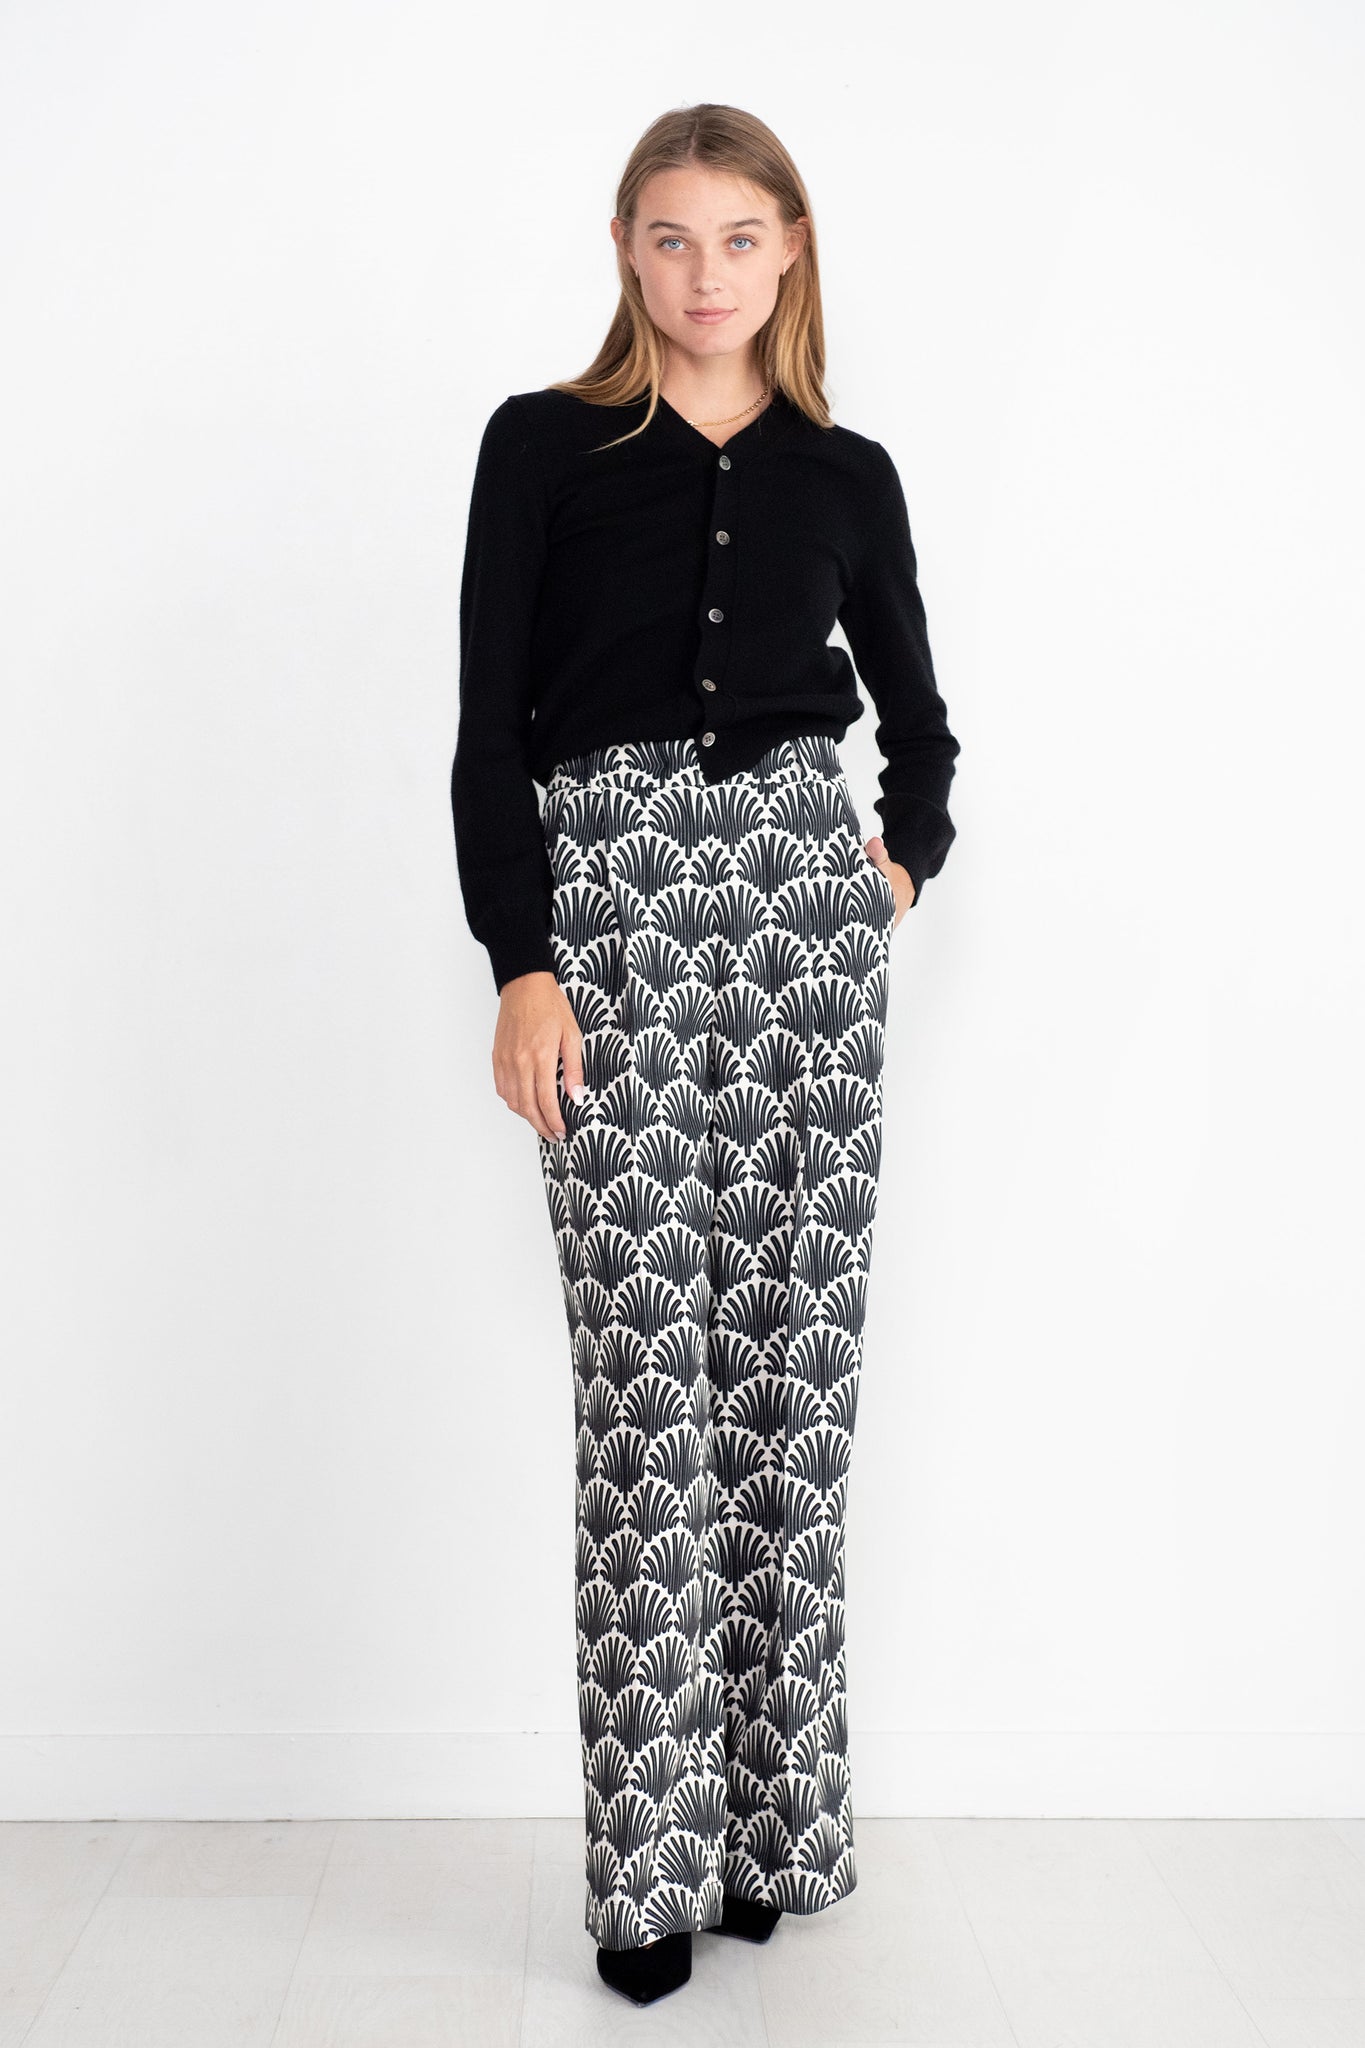 ODEEH - Pattern Pants, Black & White